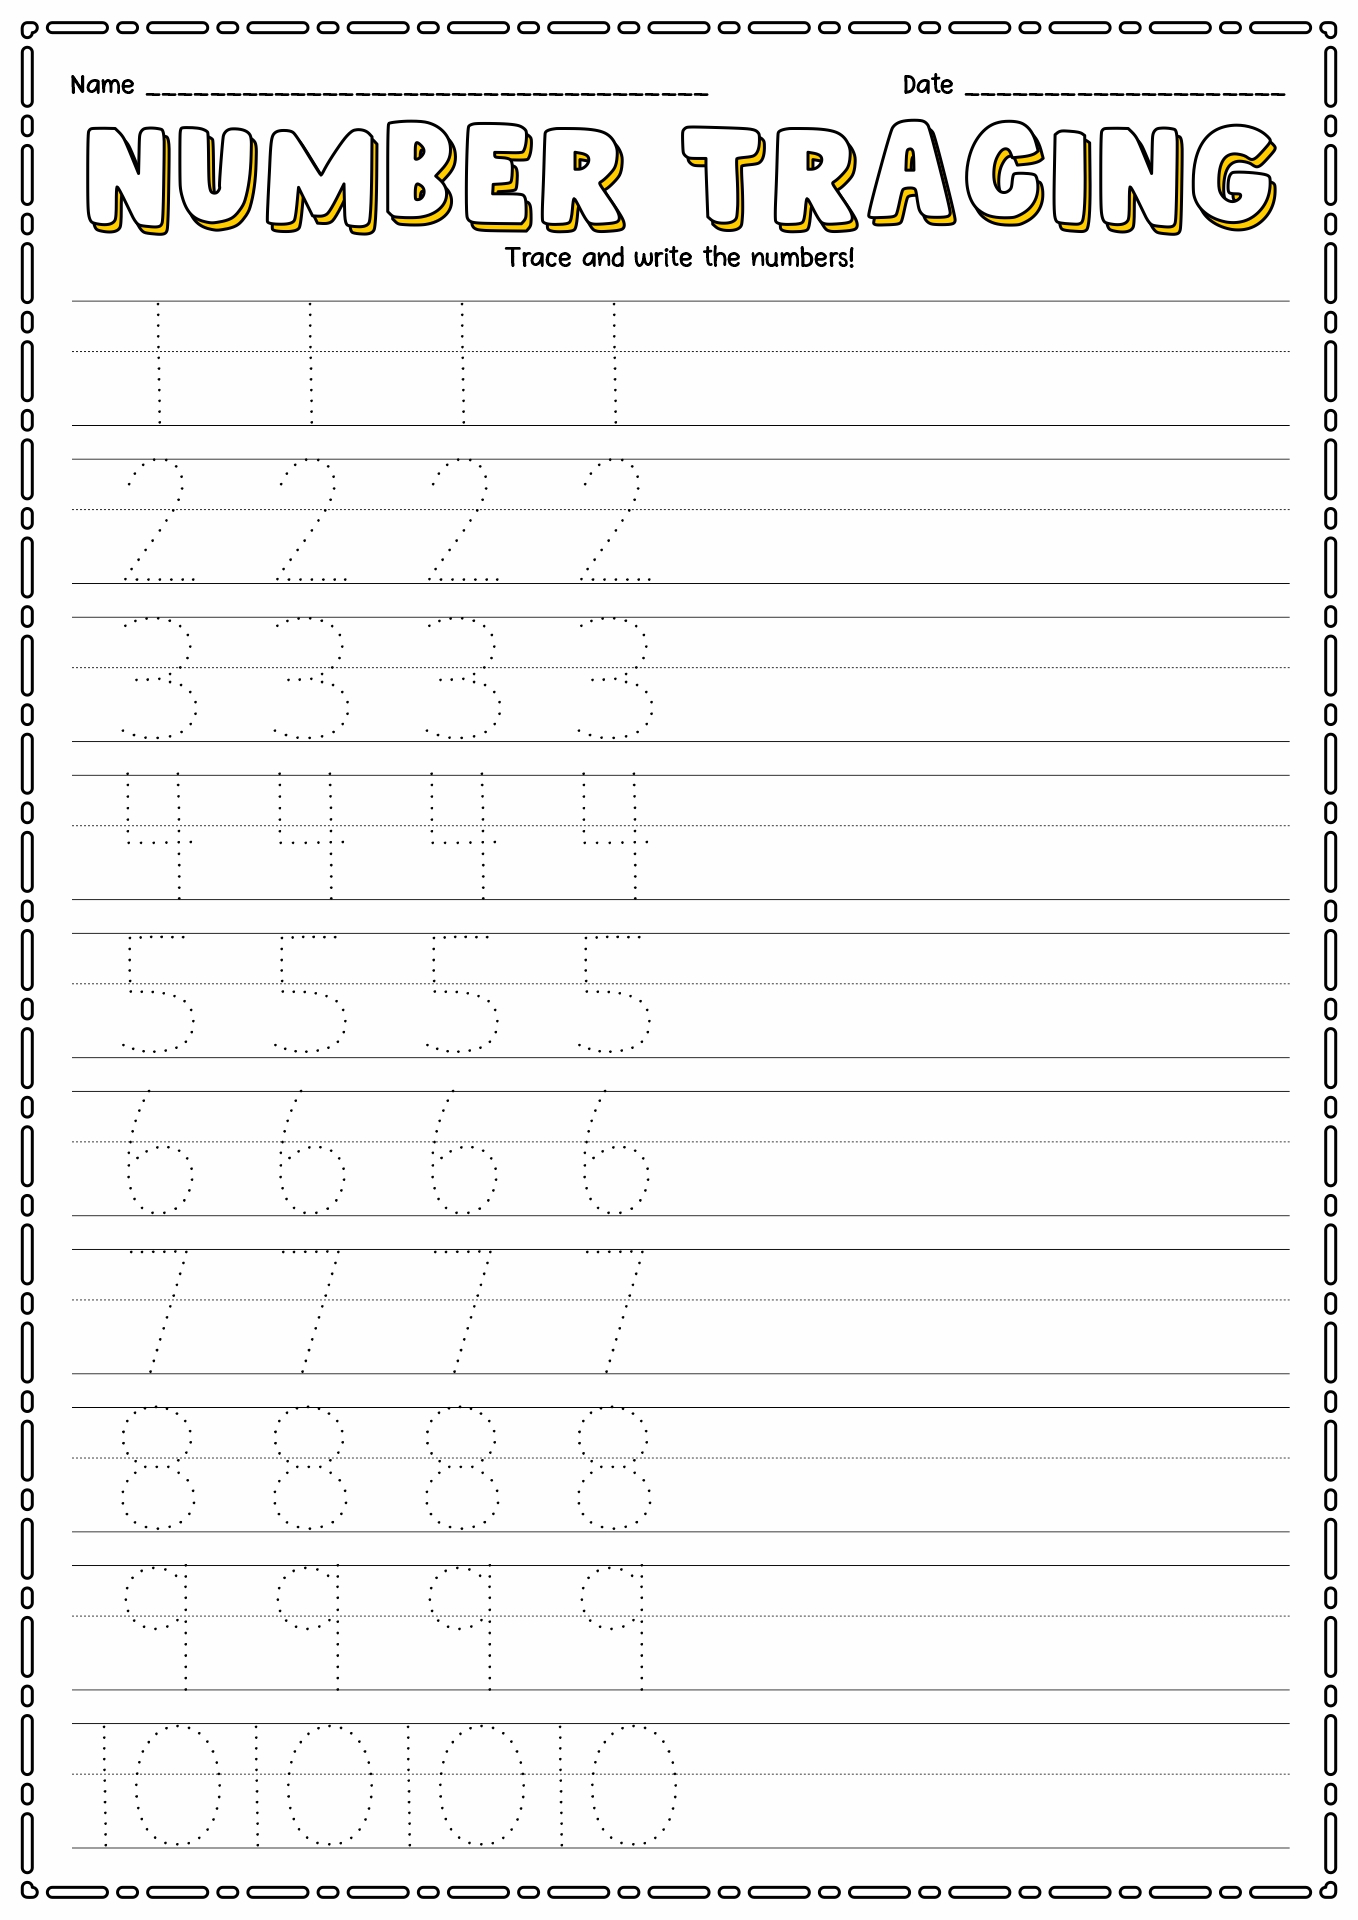 Free Printable Preschool Writing Numbers Worksheets